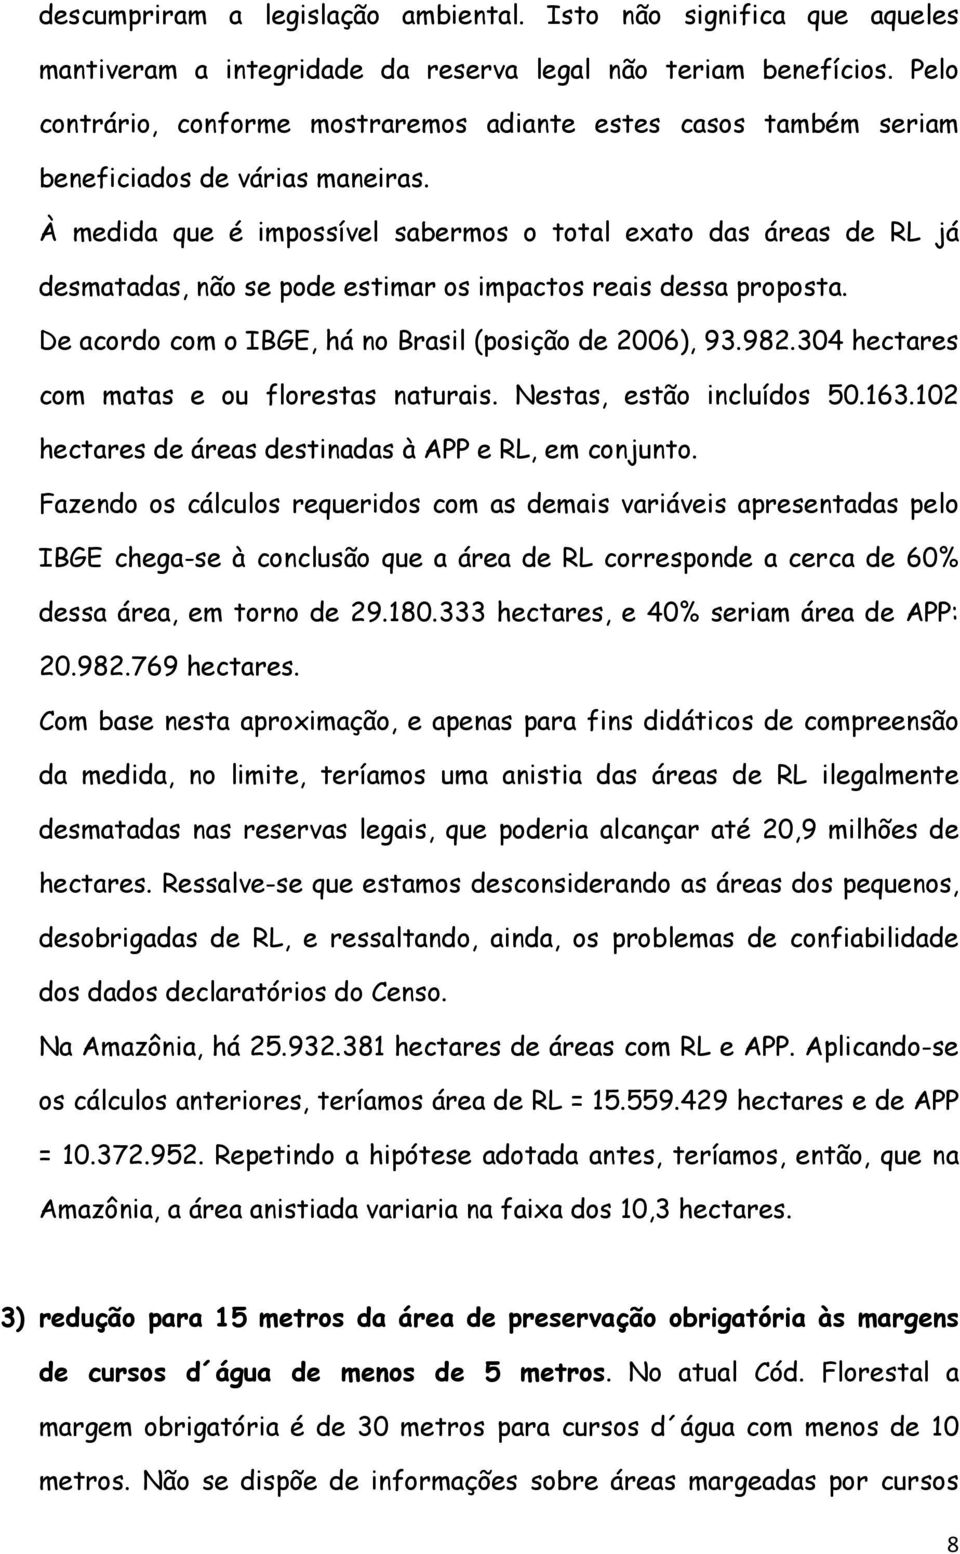 À medida que é impossível sabermos o total exato das áreas de RL já desmatadas, não se pode estimar os impactos reais dessa proposta. De acordo com o IBGE, há no Brasil (posição de 2006), 93.982.